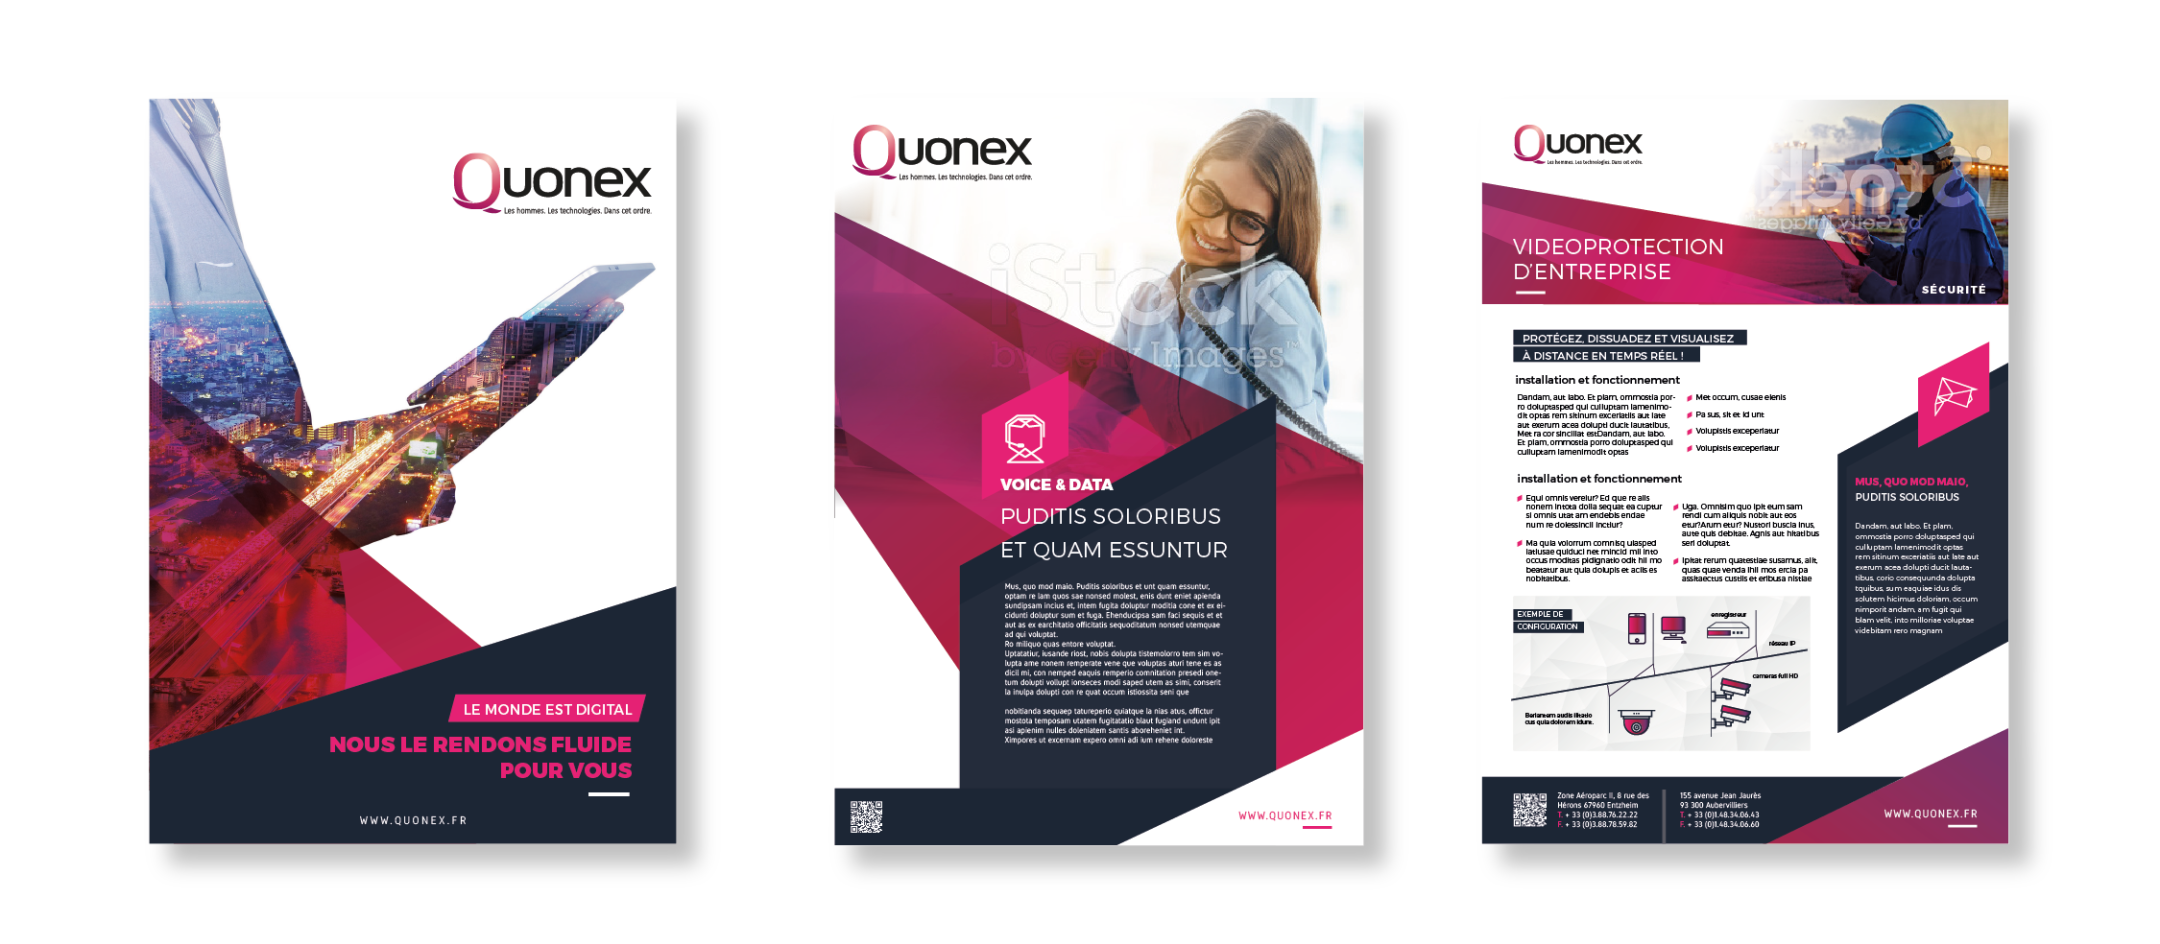 Quonex - Création d'une identité de marque Image 2